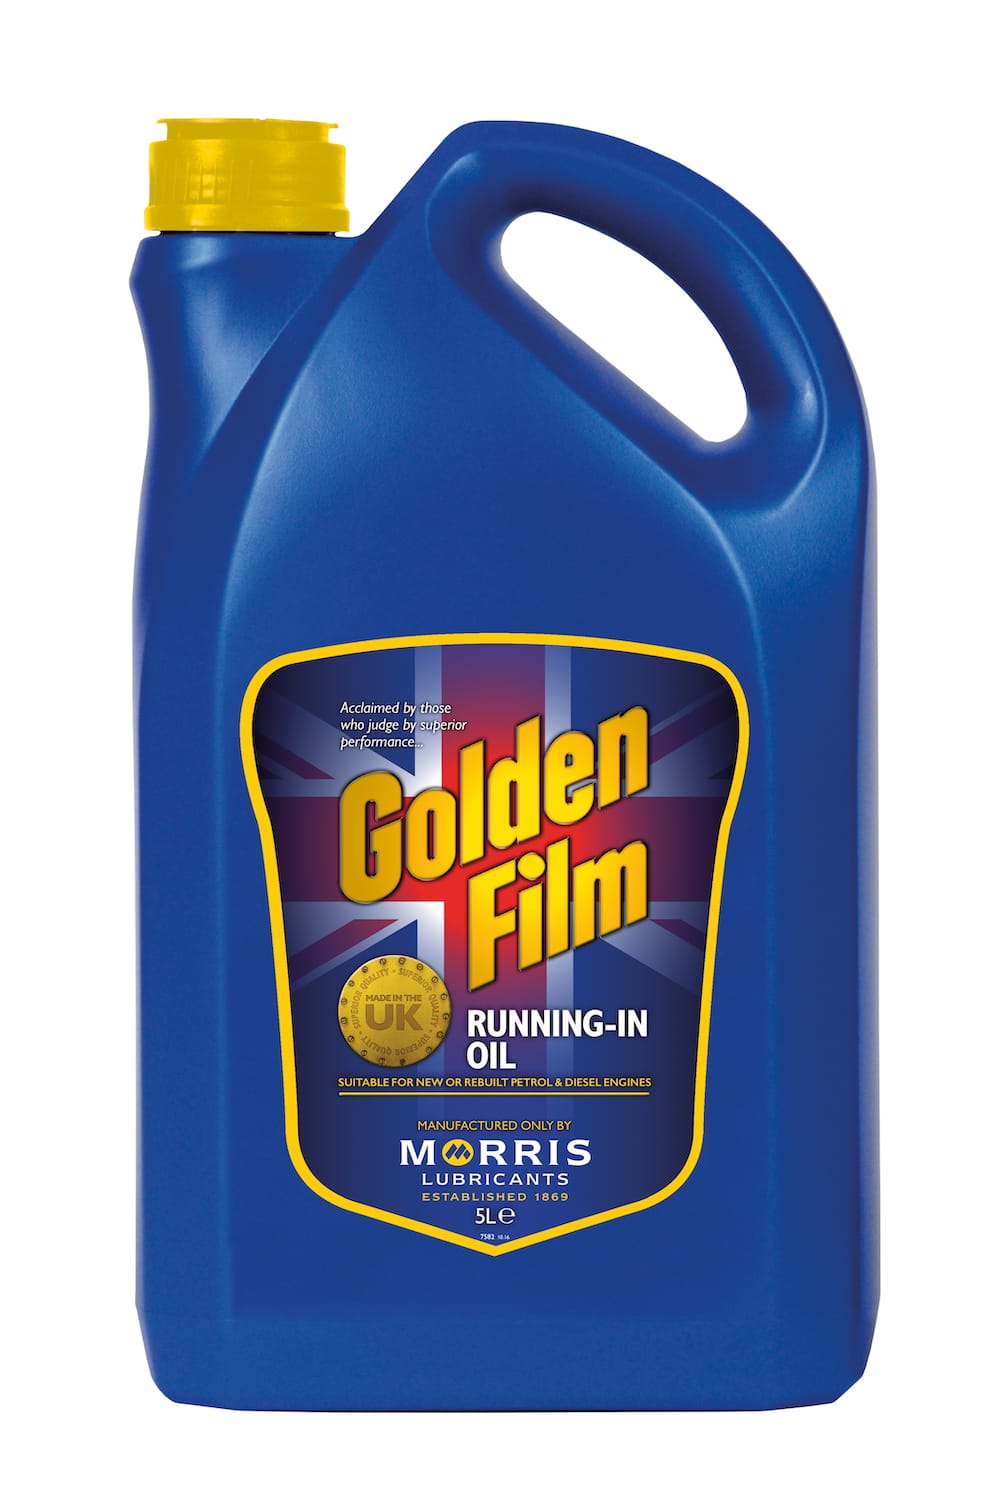 Golden Film Running-In Oil